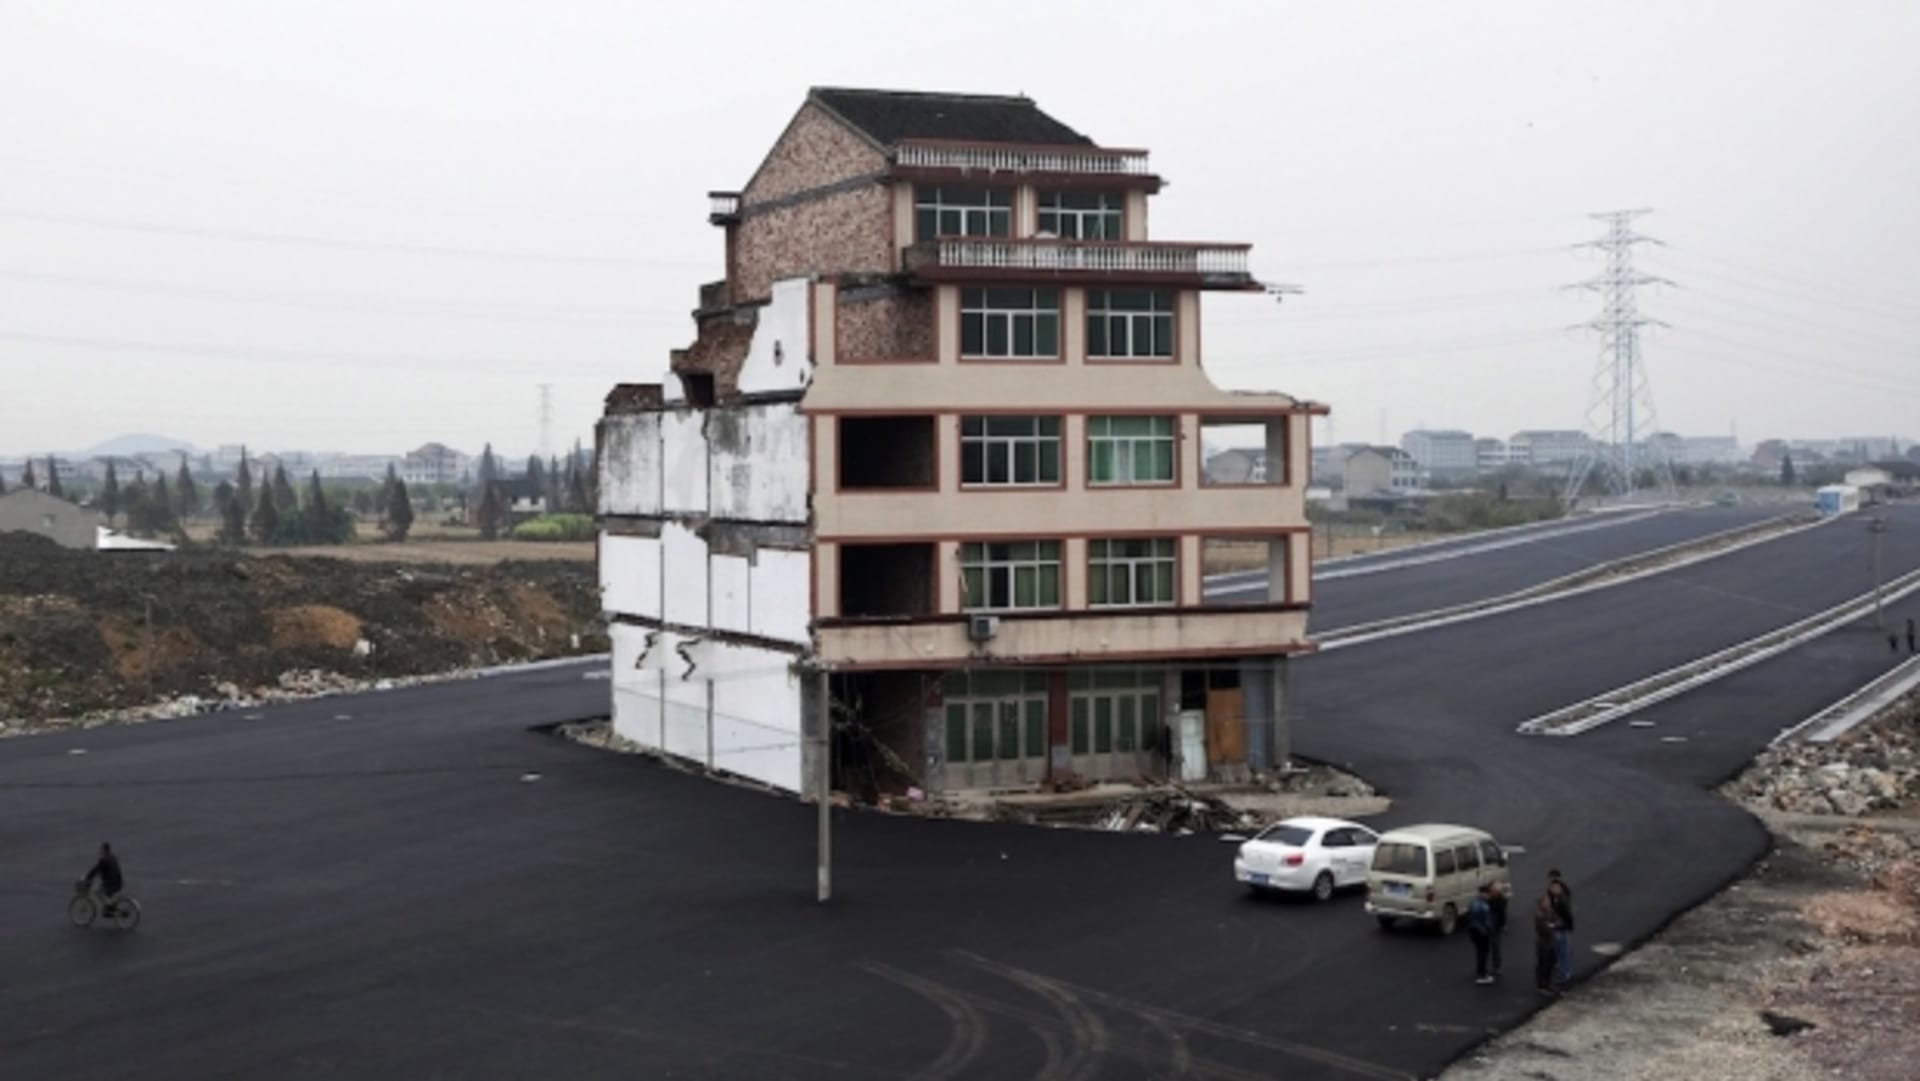 Domy-nehty v Číně: tenhle zůstal uprostřed silnice